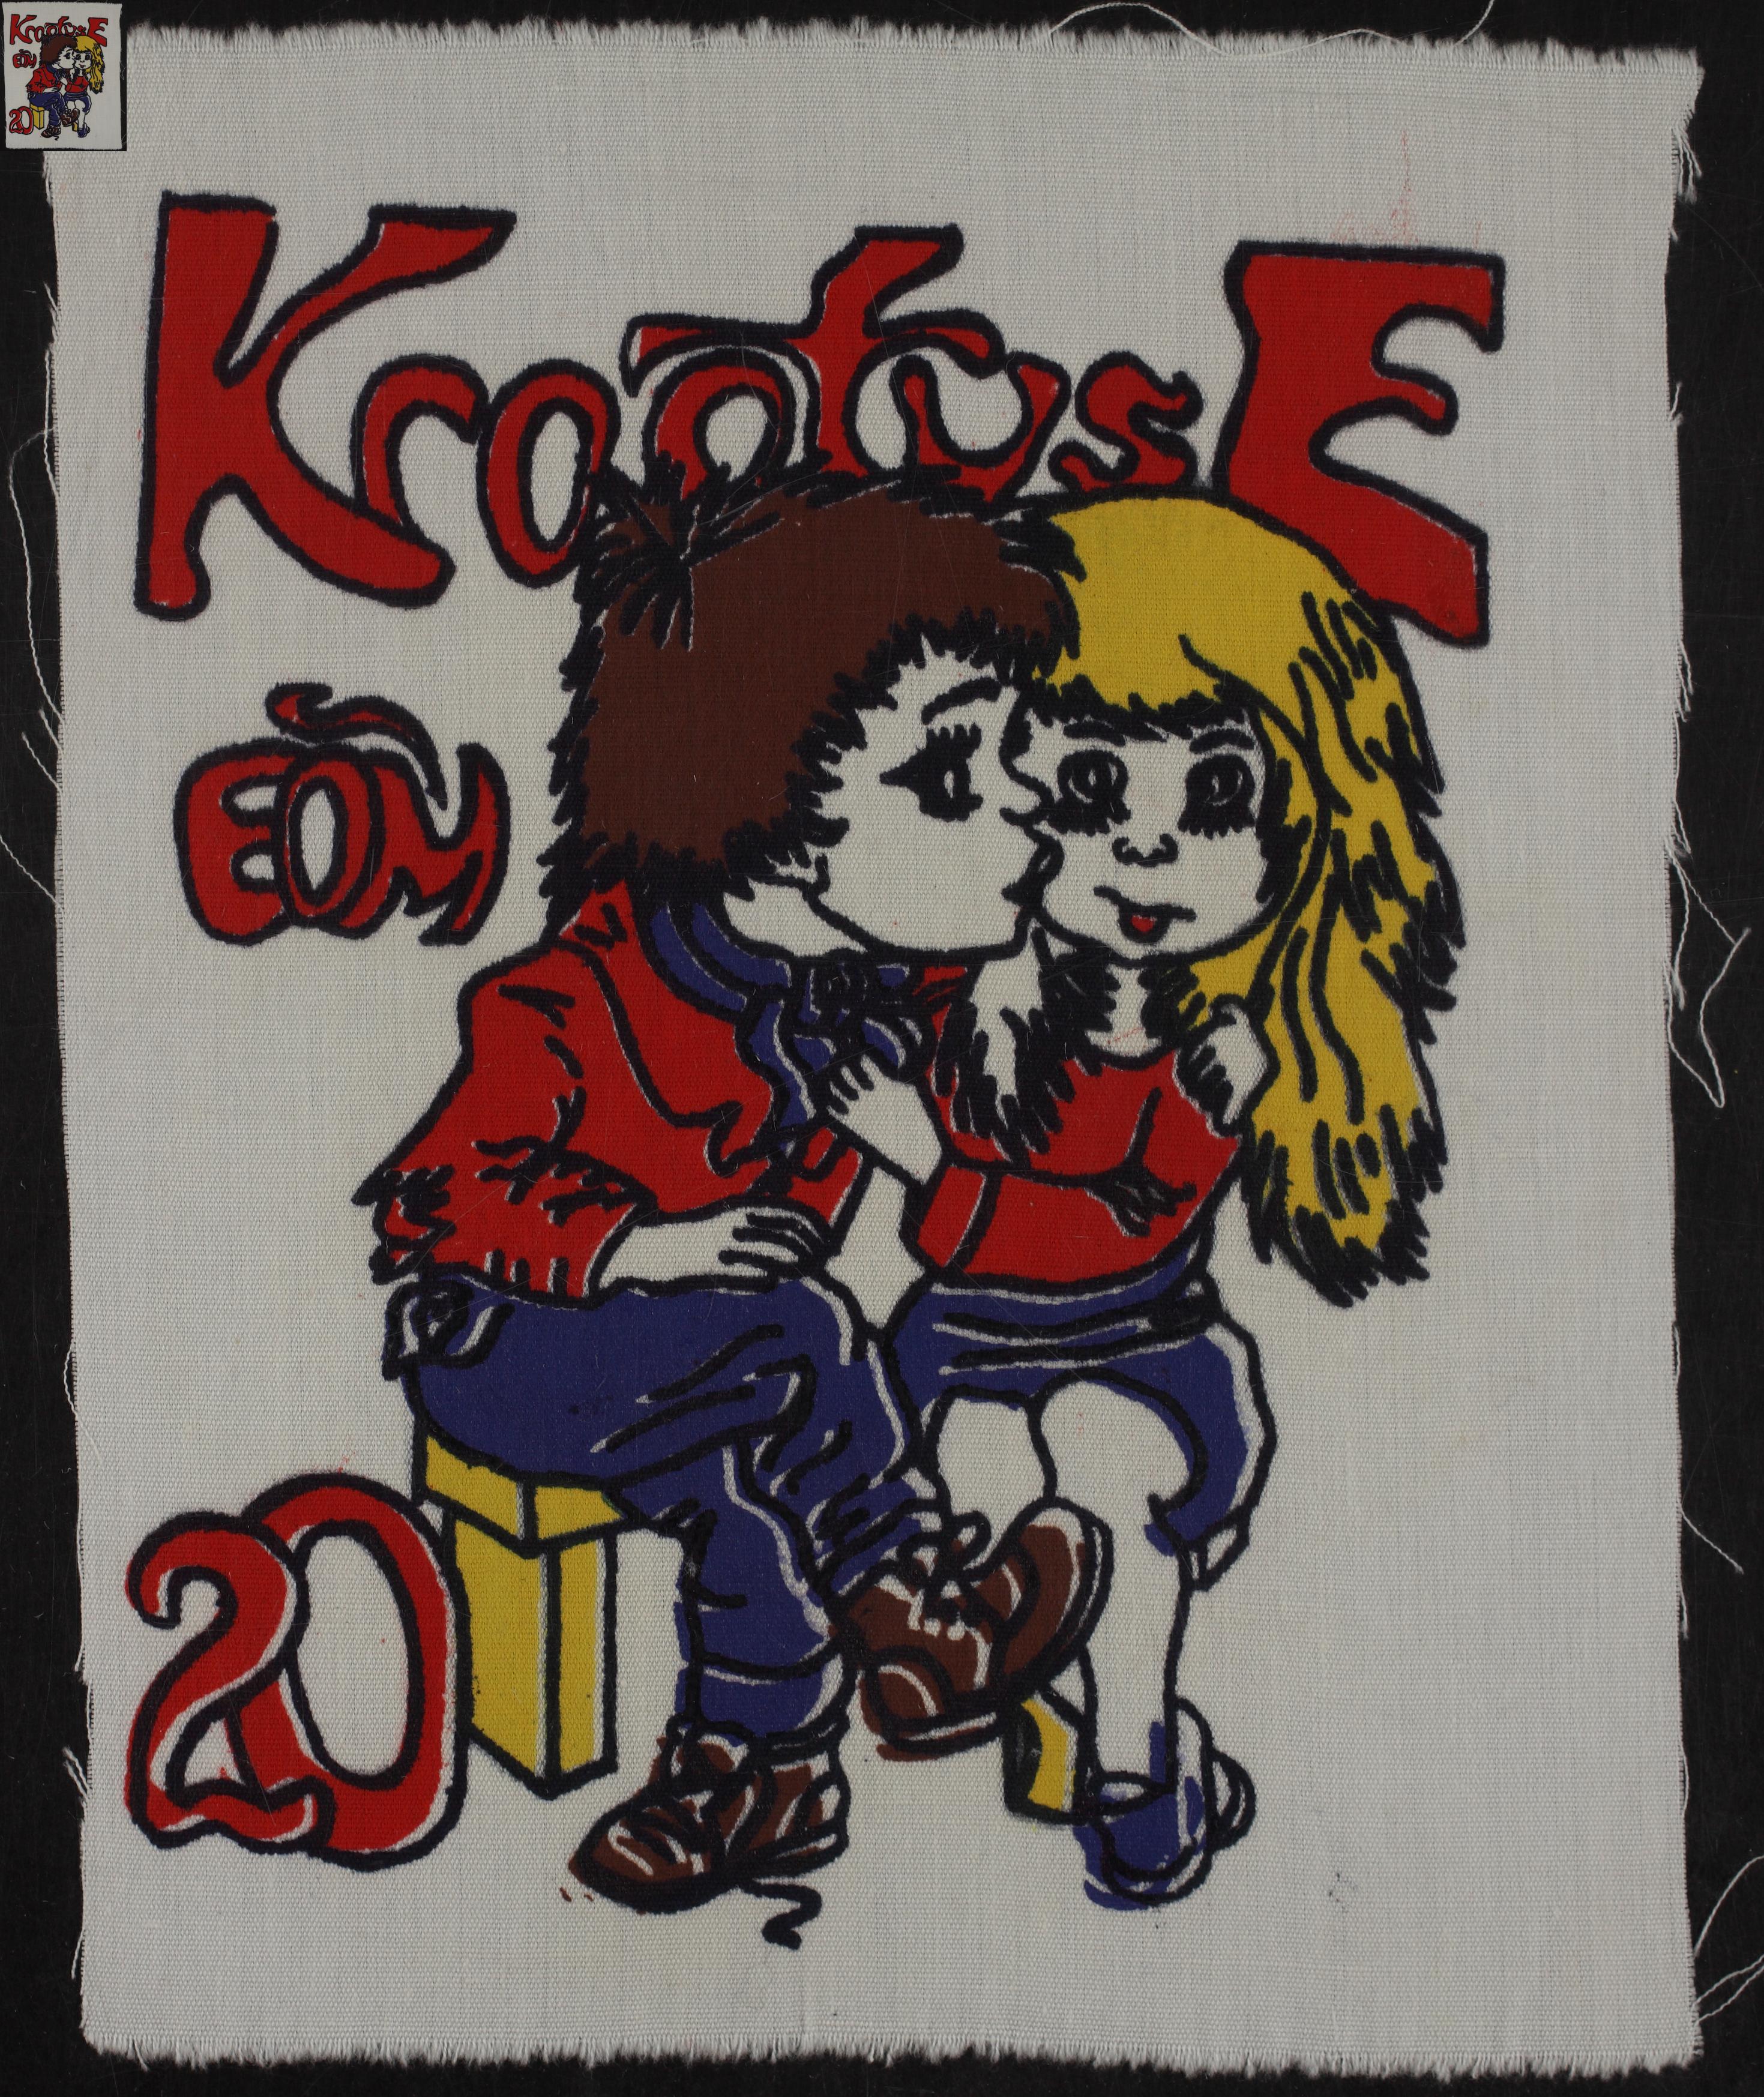 Maleva embleem, Krootuse 1986 / Secondary School Students' Building Brigade emblem, Krootuse 1986